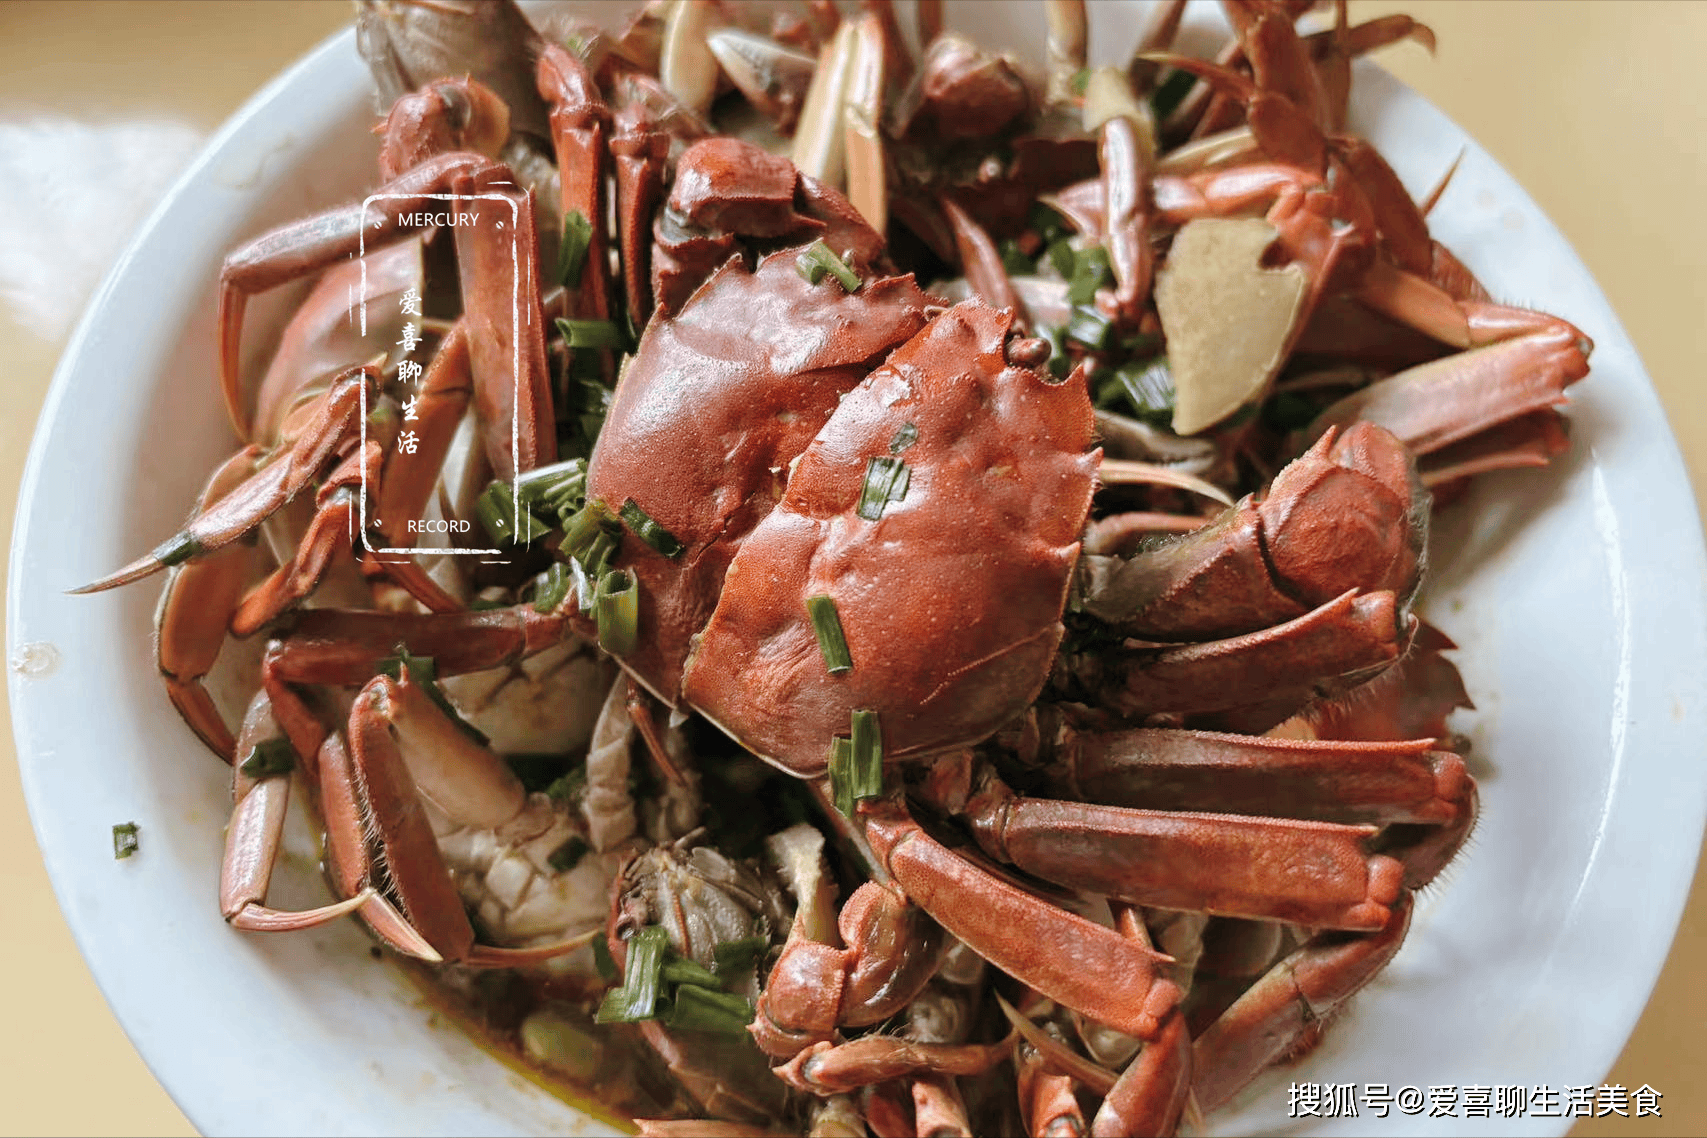 8个螃蟹一把毛豆，简单一蒸10分钟出锅，尝蟹品豆，真是人间美味呀！